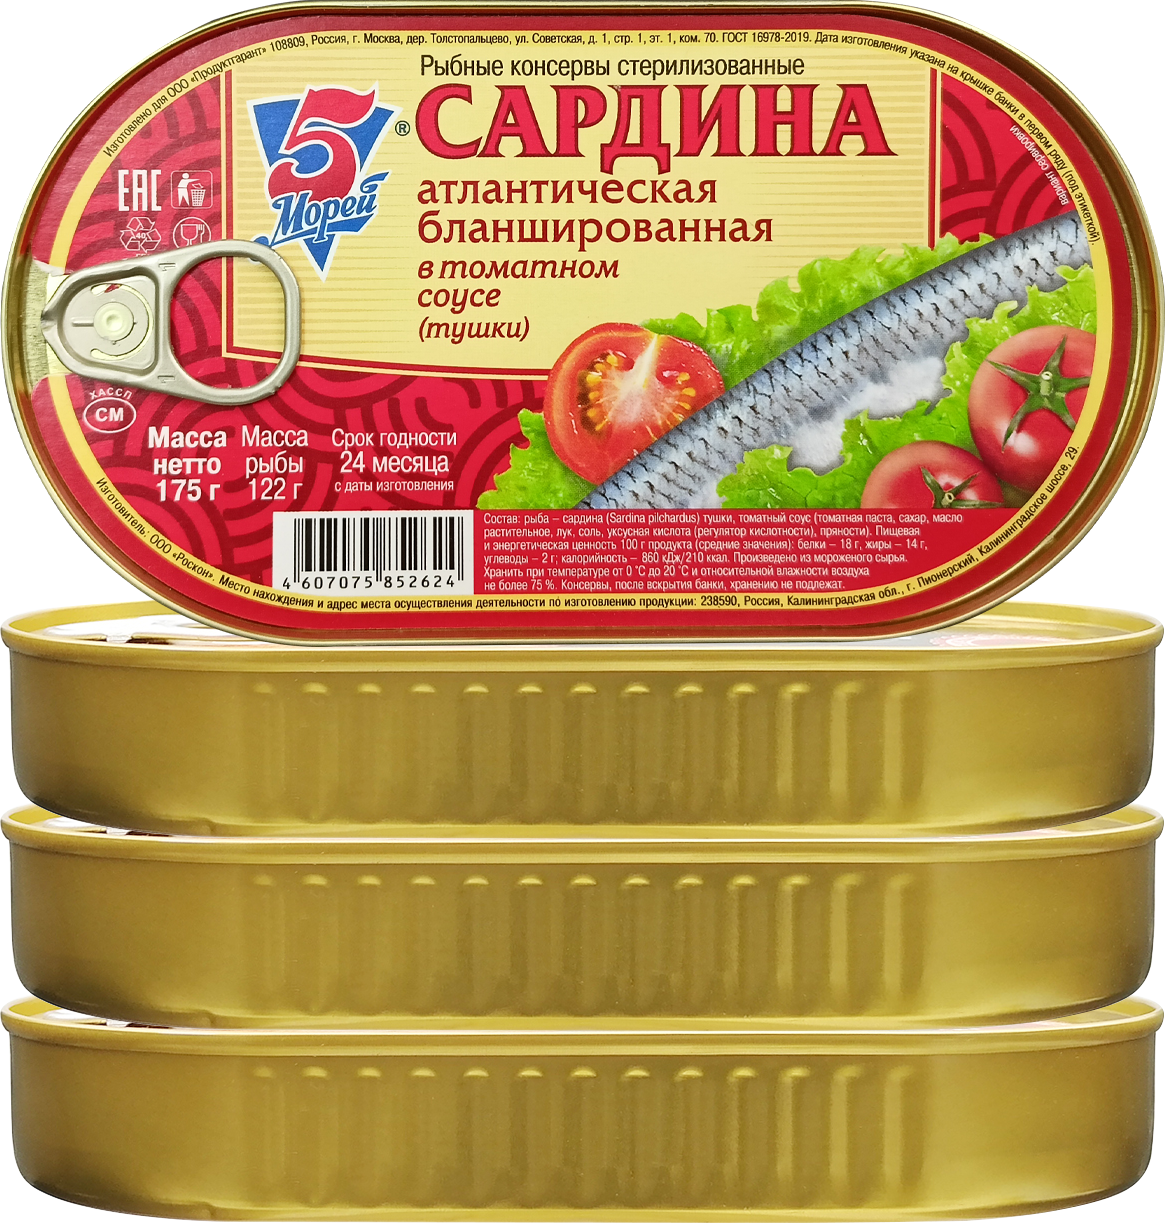 Консервы рыбные 5 Морей - Сардина атлантическая в томатном соусе, 175 г - 4 шт